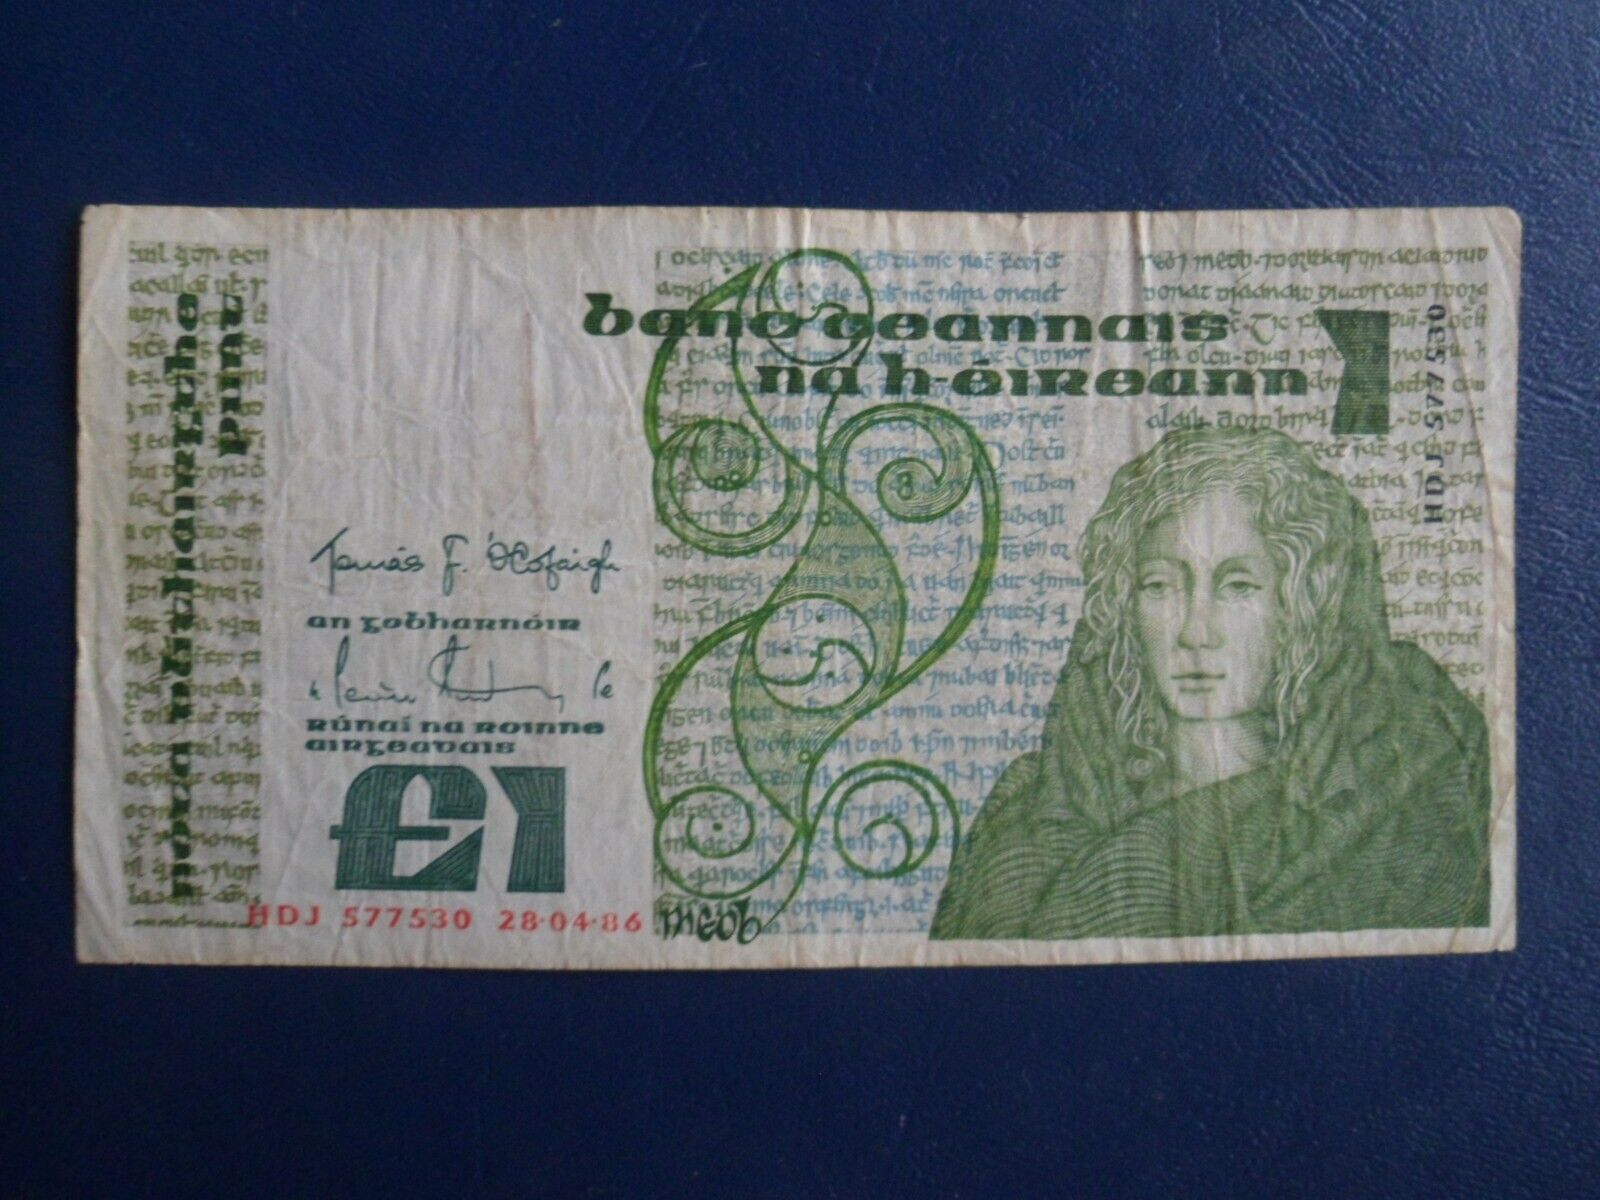 1986 Ireland 1 Pound Banknote-28-04-86  -23-4